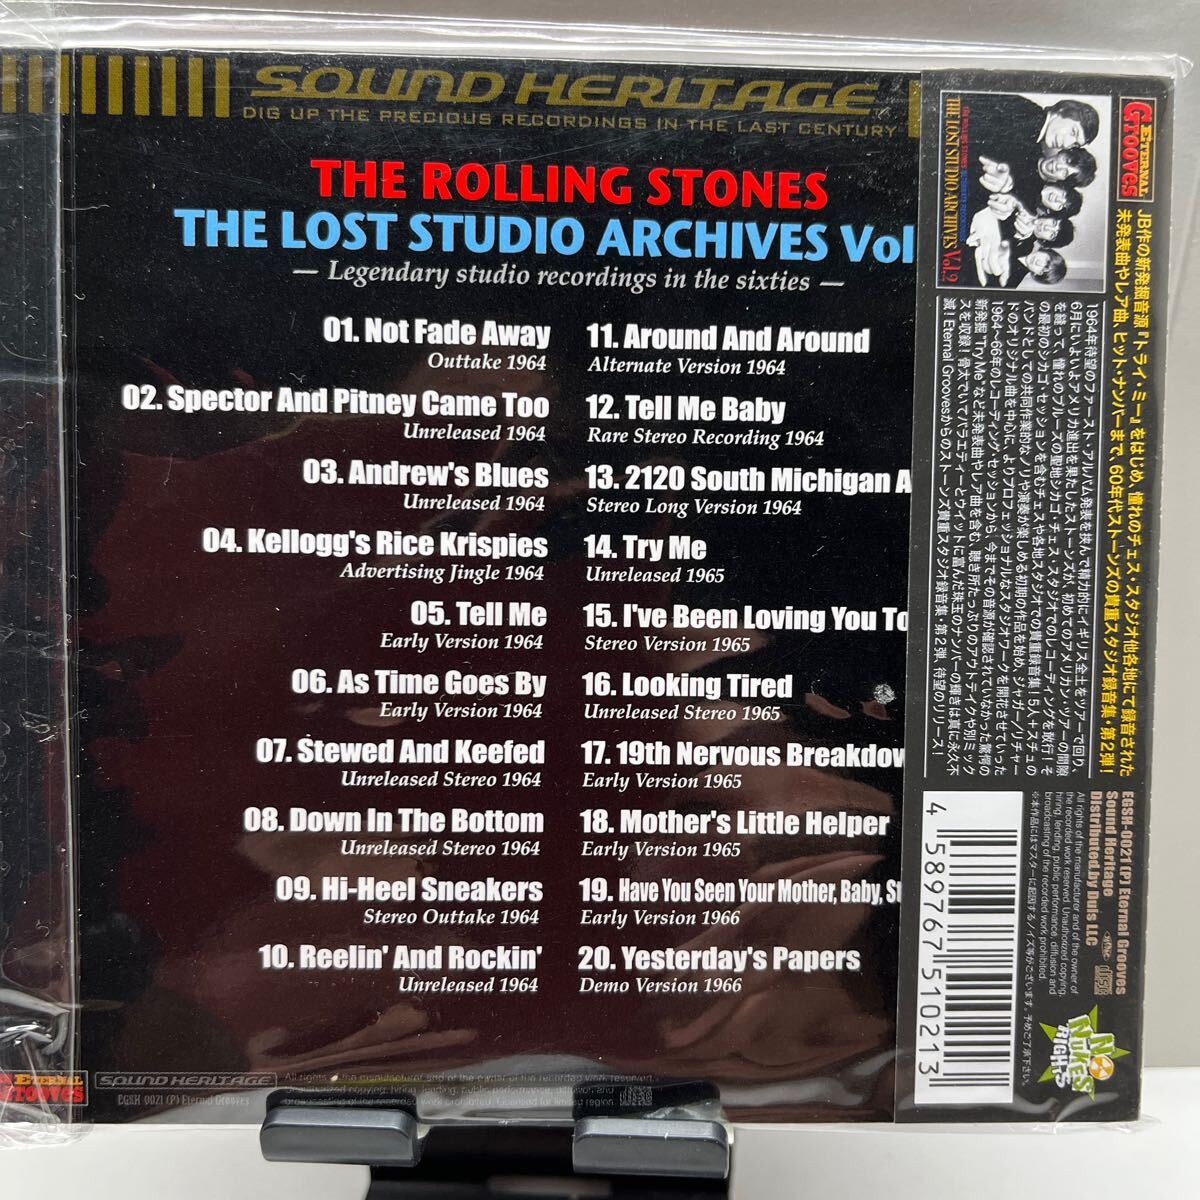 【合わせ買い不可】 THE LOST STUDIO ARCHIVES Vol.2 CD ザローリングストーンズ_画像2